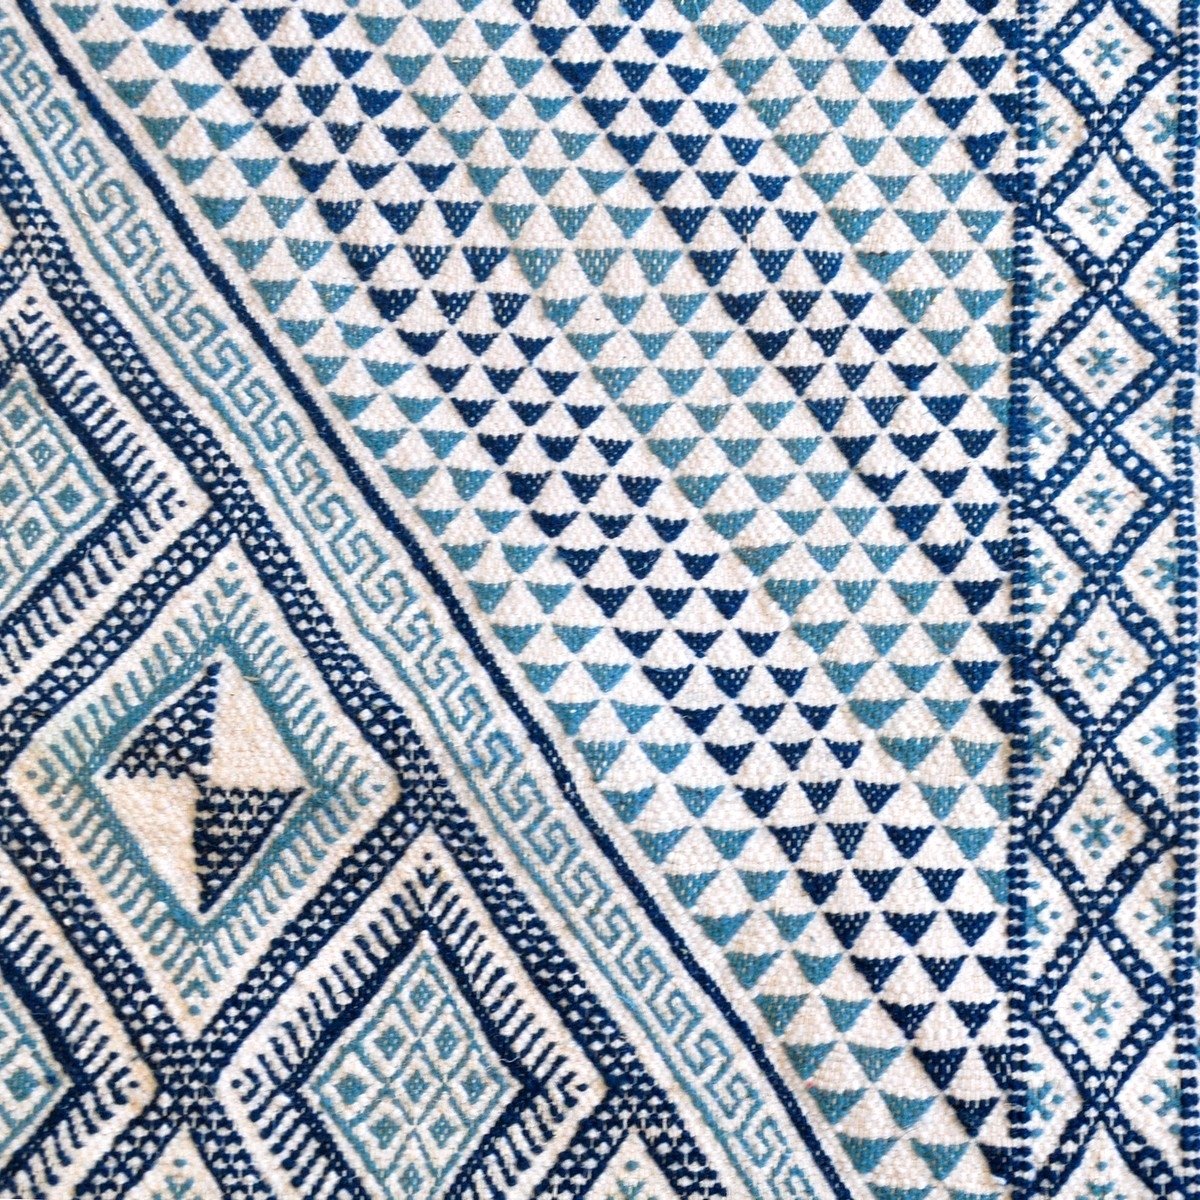 Berber tapijt Groot Tapijt Margoum Al Kasaba 170x240 Blauw/Wit (Handgeweven, Wol, Tunesië) Tunesisch Margoum Tapijt uit de stad 